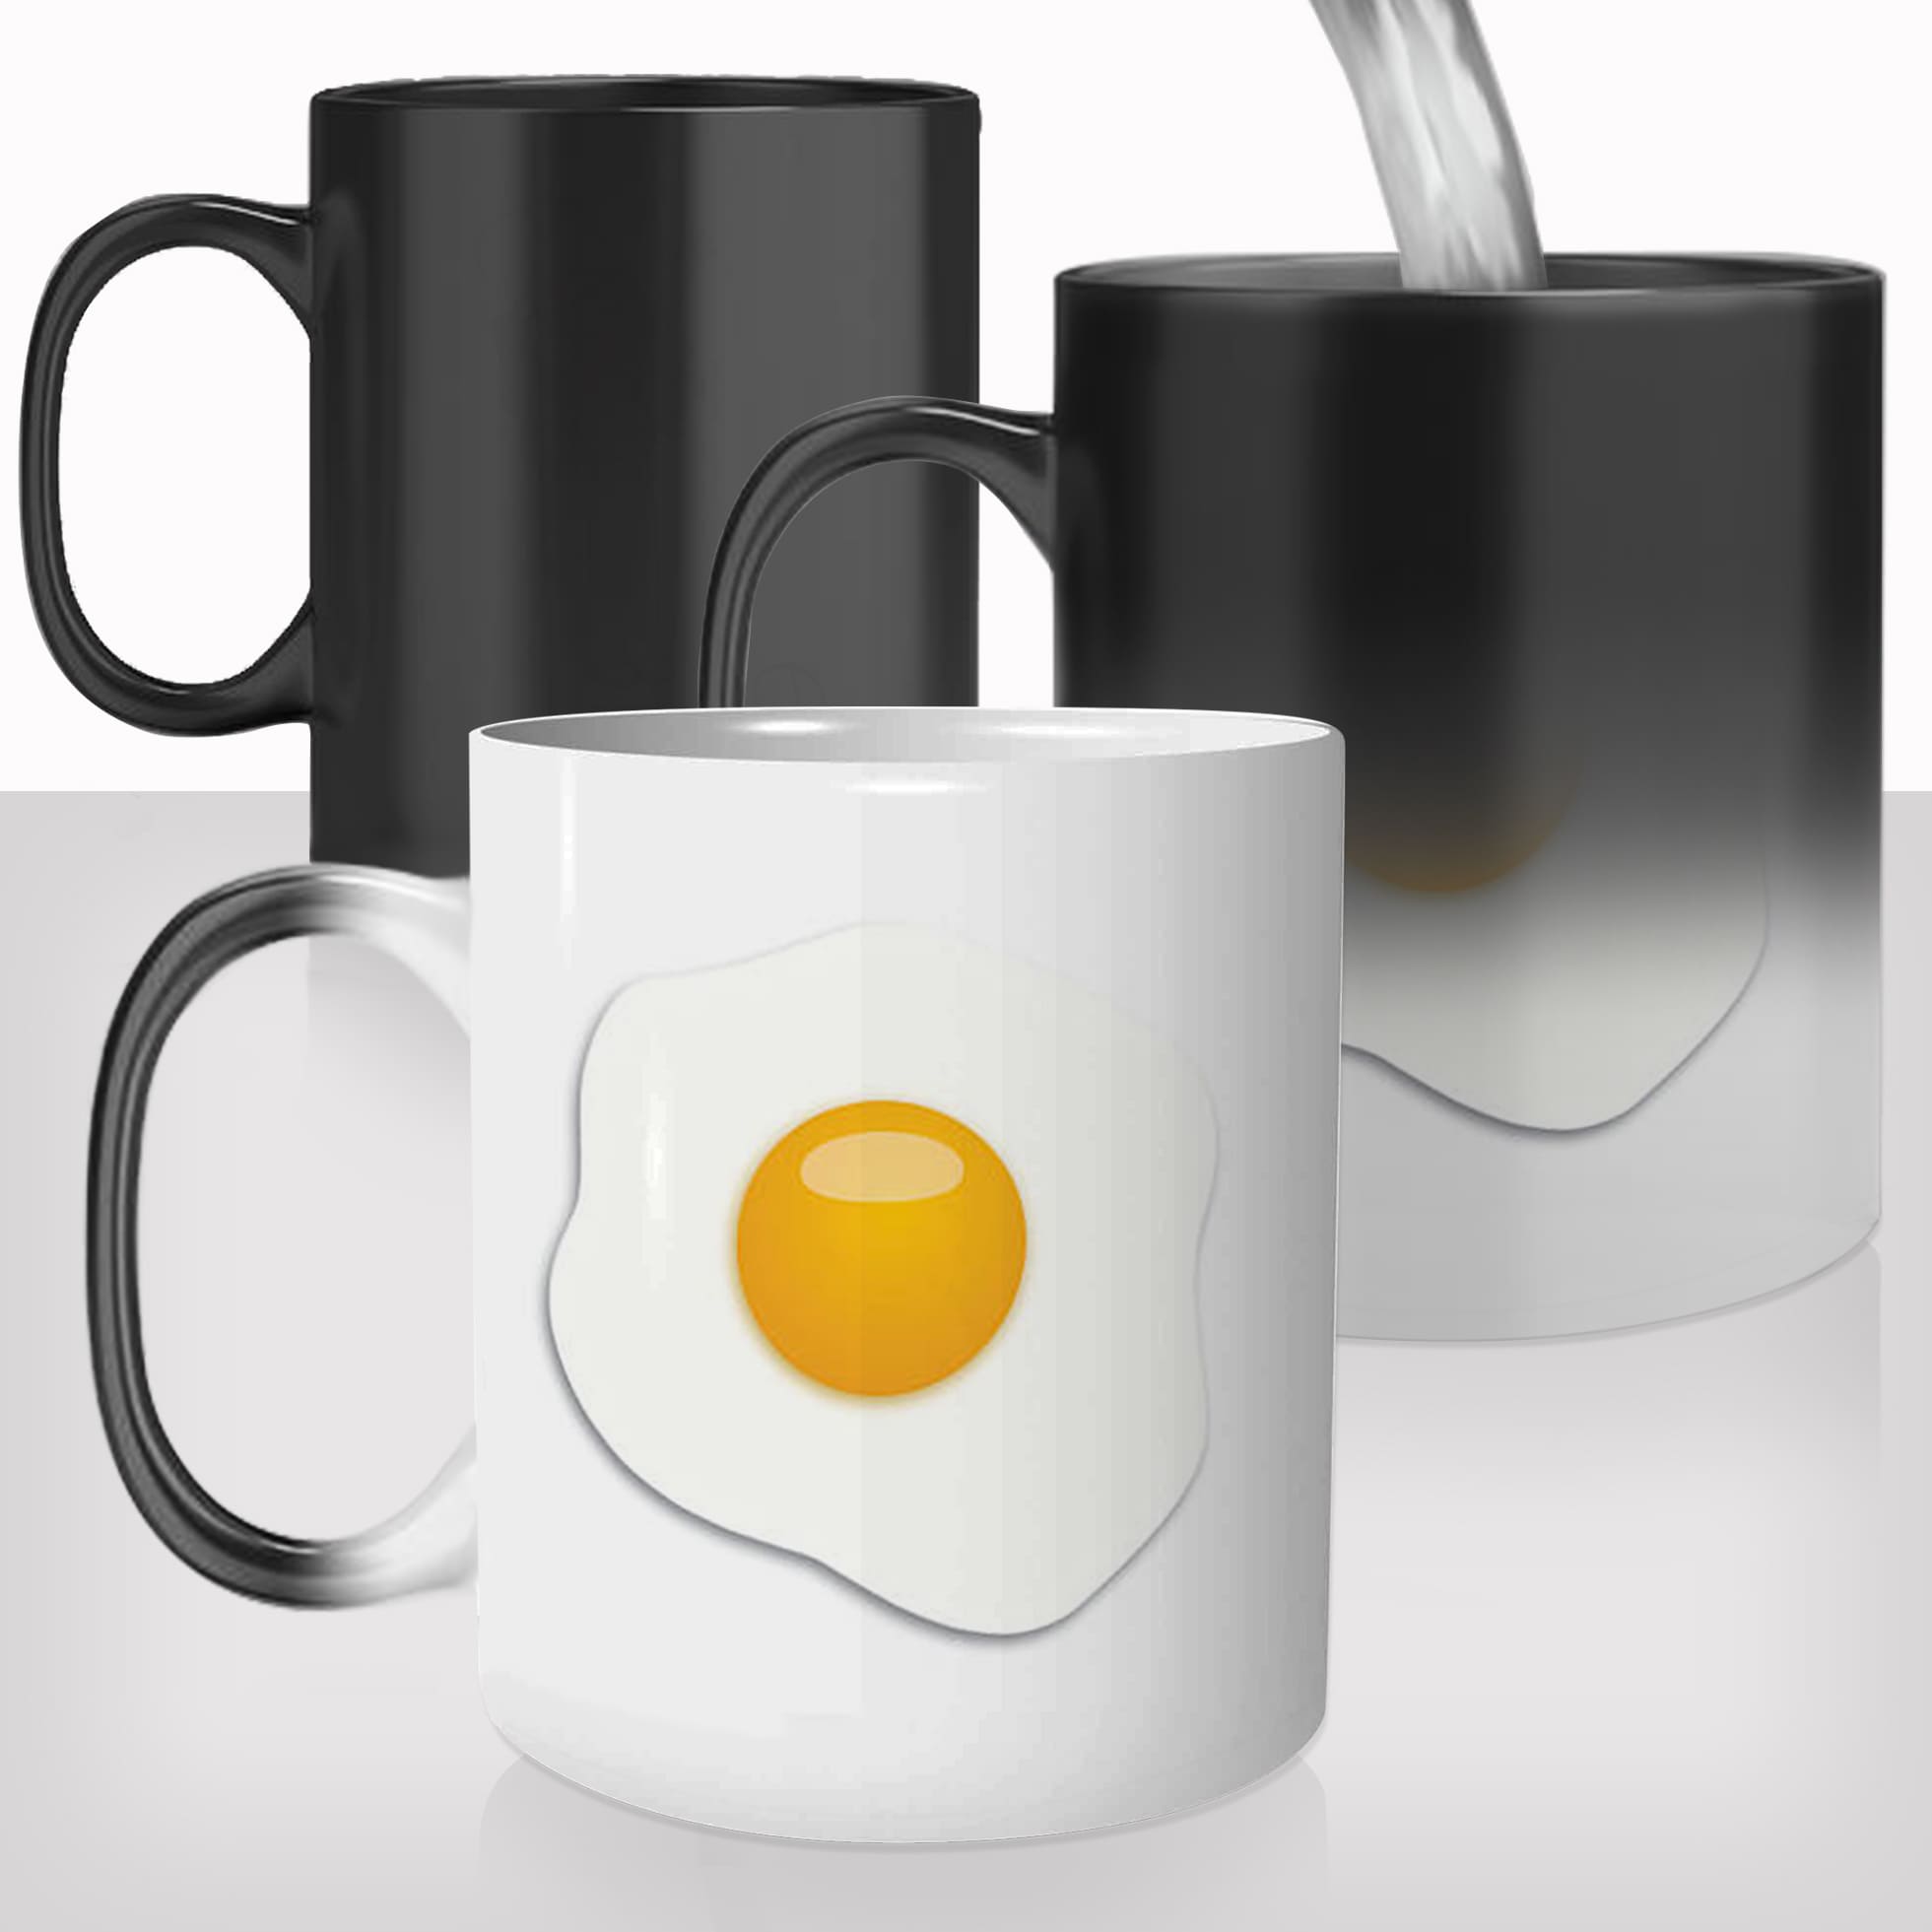 mug-magique-personnalisable-thermoreactif-tasse-thermique-oeuf-au-plat-jaune-protéines-macros-muscu-personnalisé-fun-idée-cadeau-original